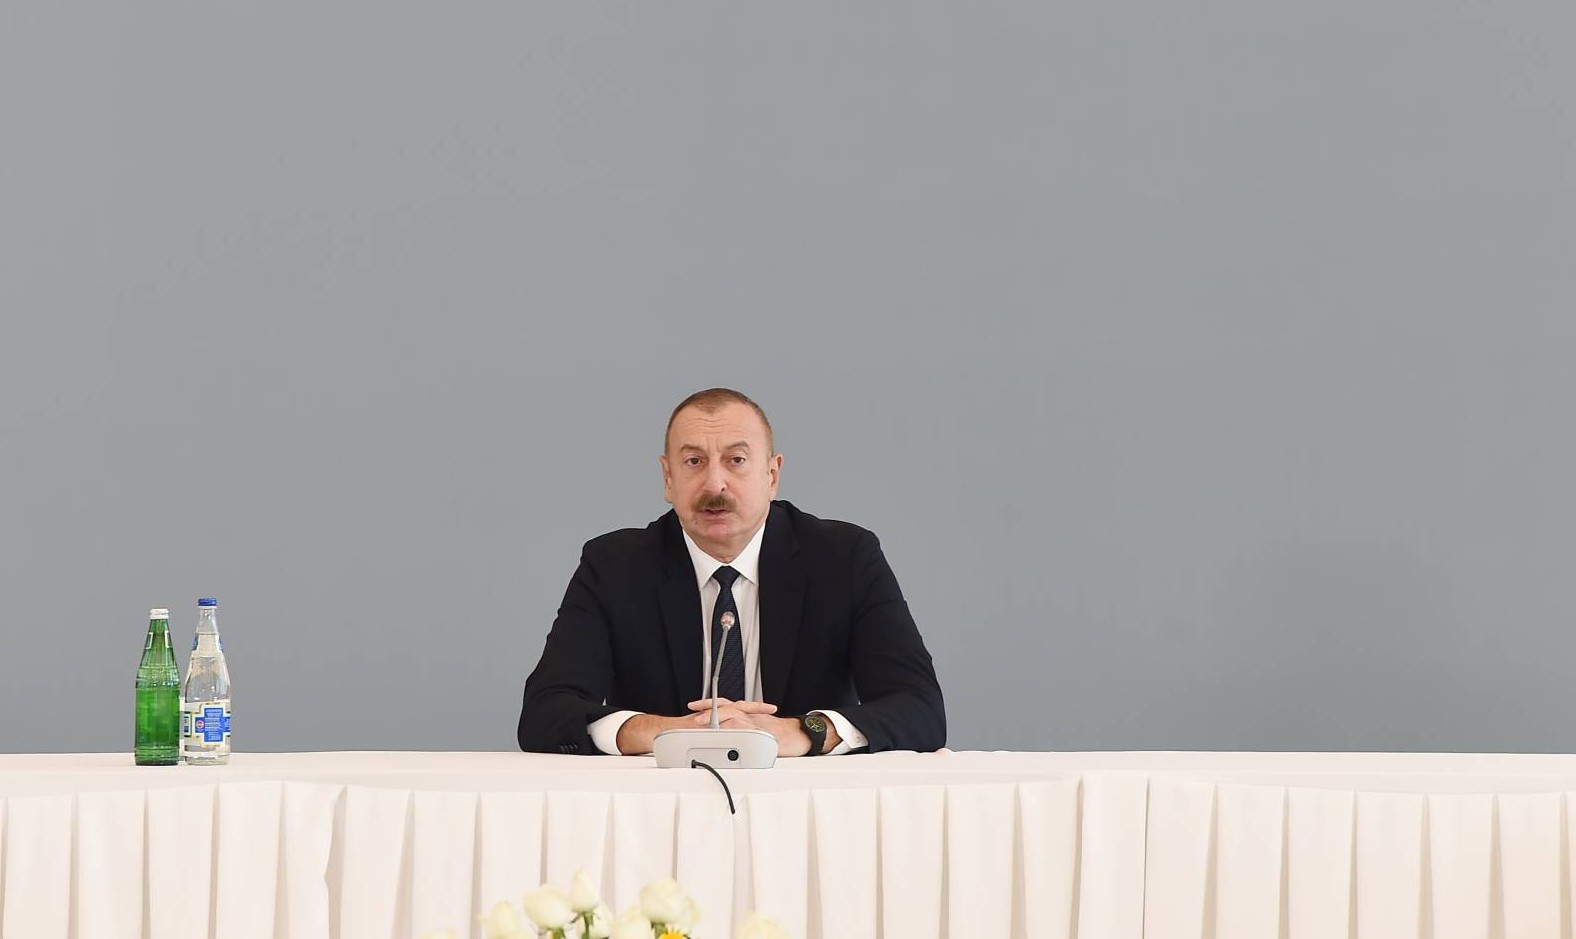 “Enerji təhlükəsizliyi məsələləri bu gün daha çox əhəmiyyət daşıyır” - Azərbaycan Prezidenti  